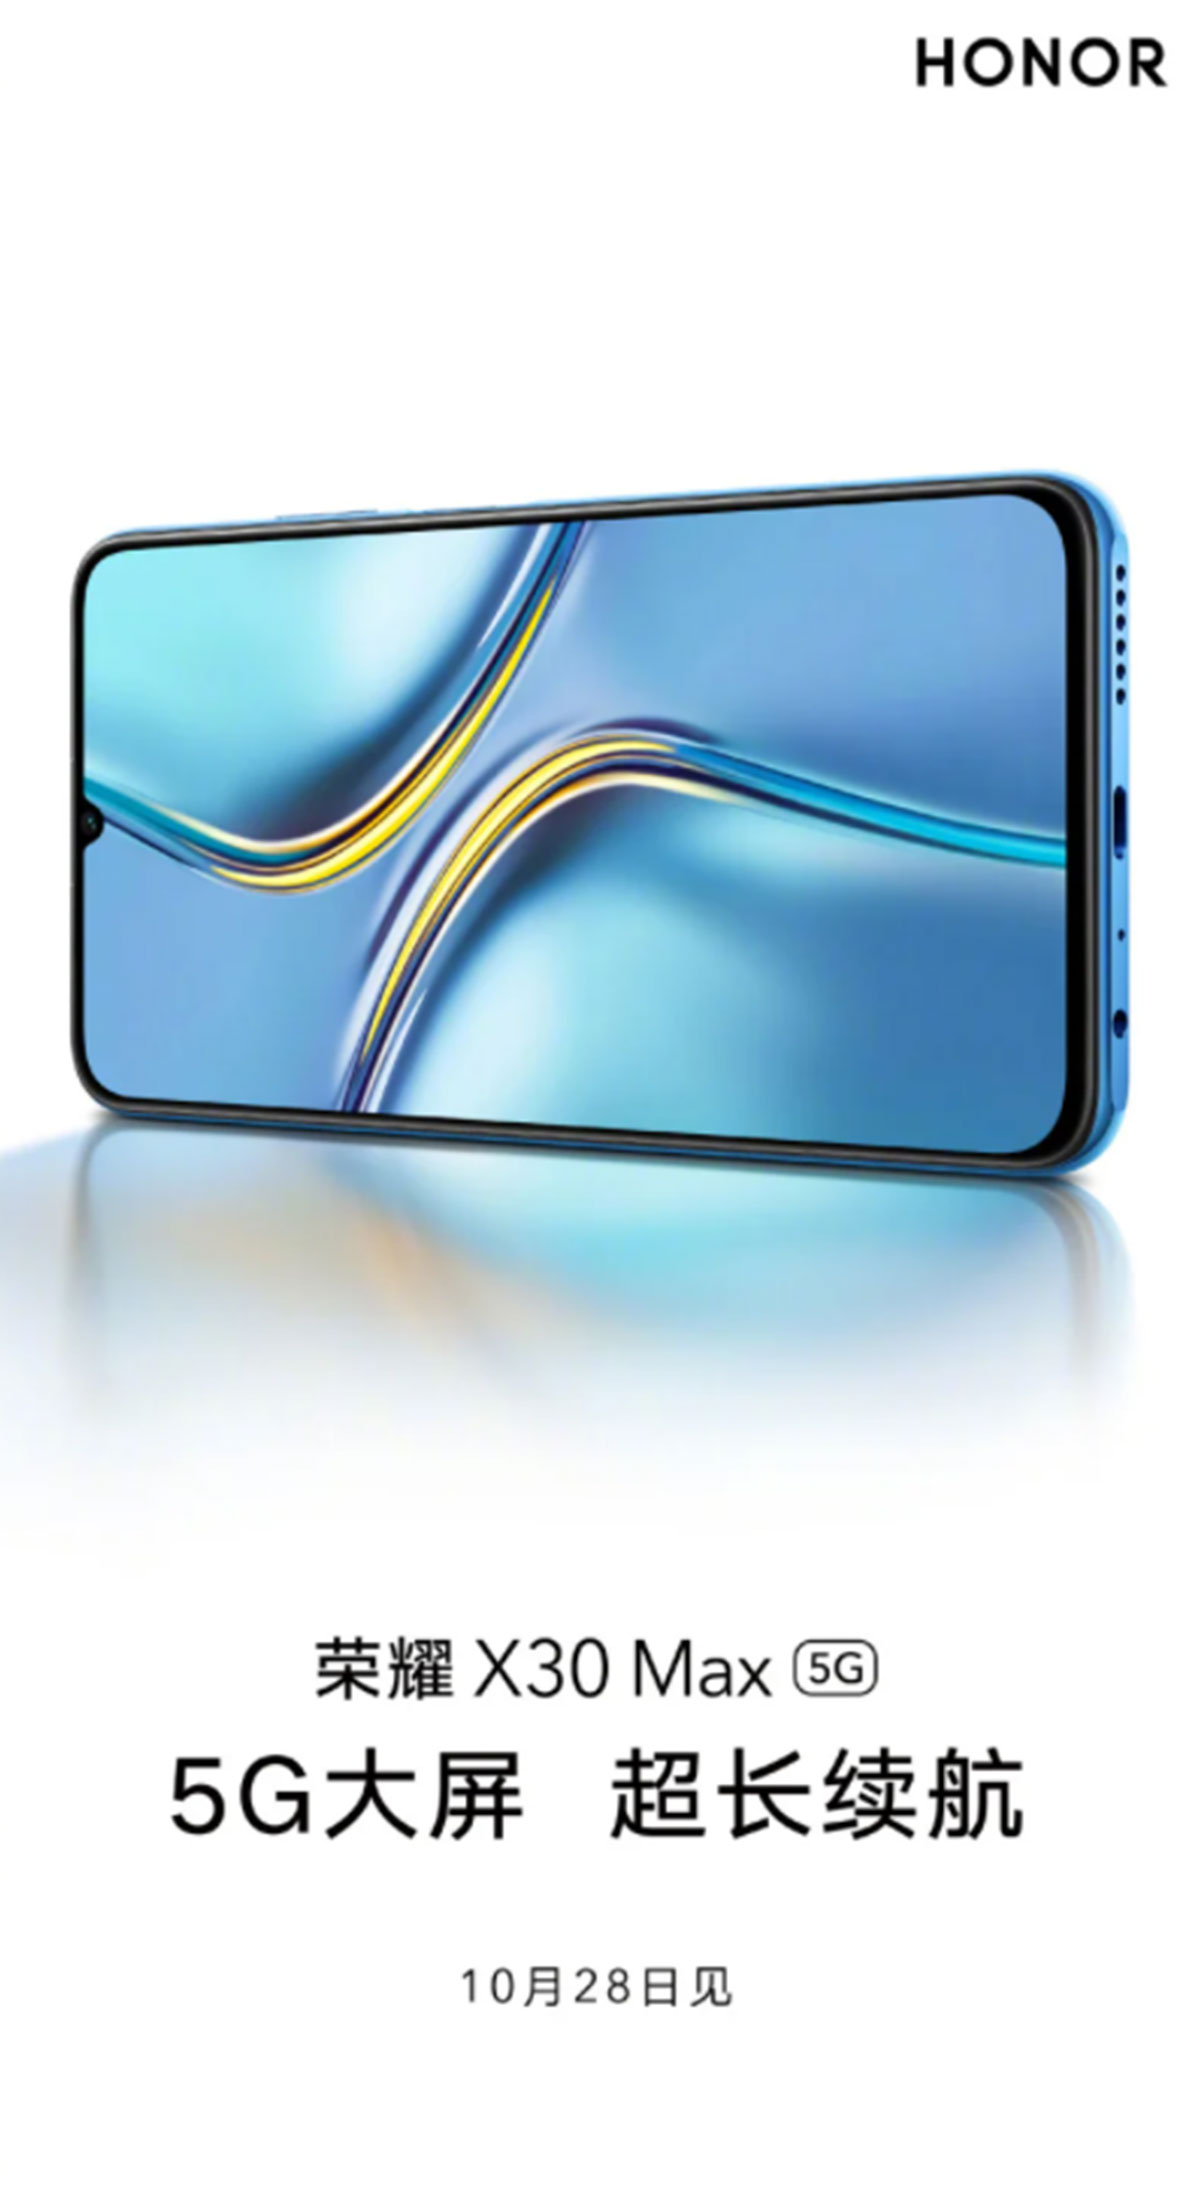 گوشی هوشمند جدید آنر X30 max